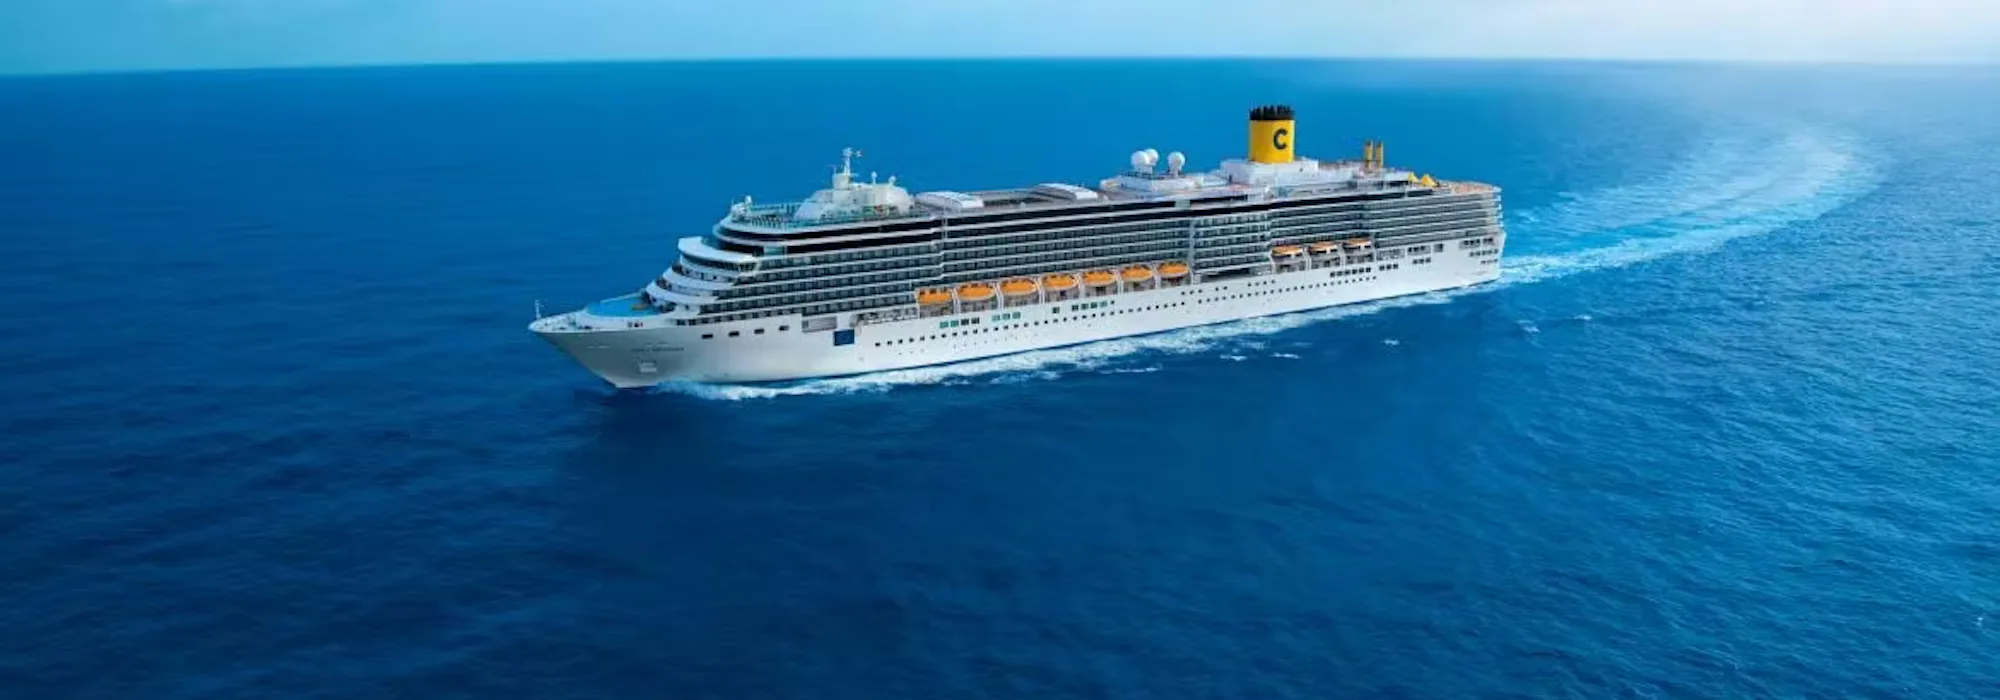 Costa Deliziosa - Costa Cruises